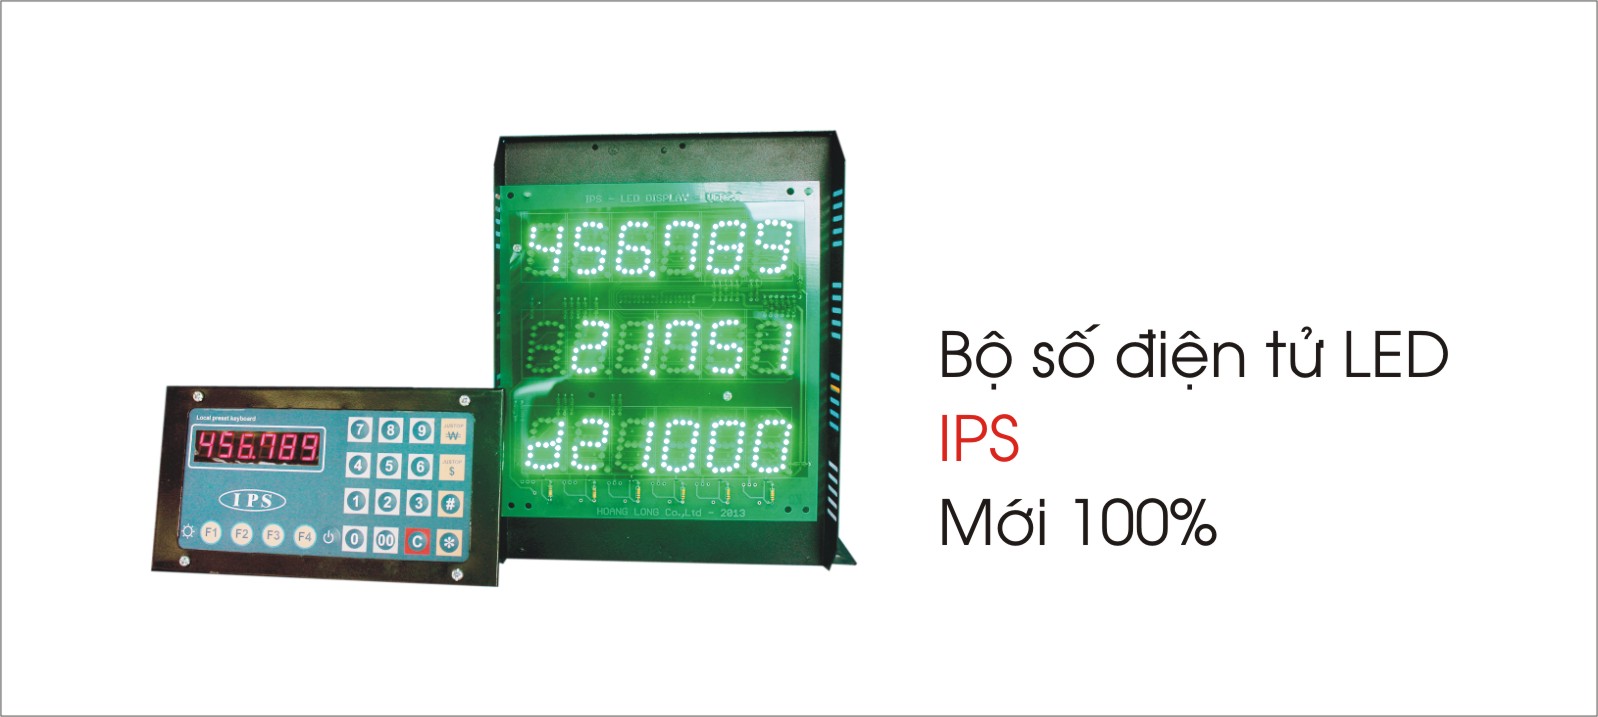 Bộ số điện tử LED IPS